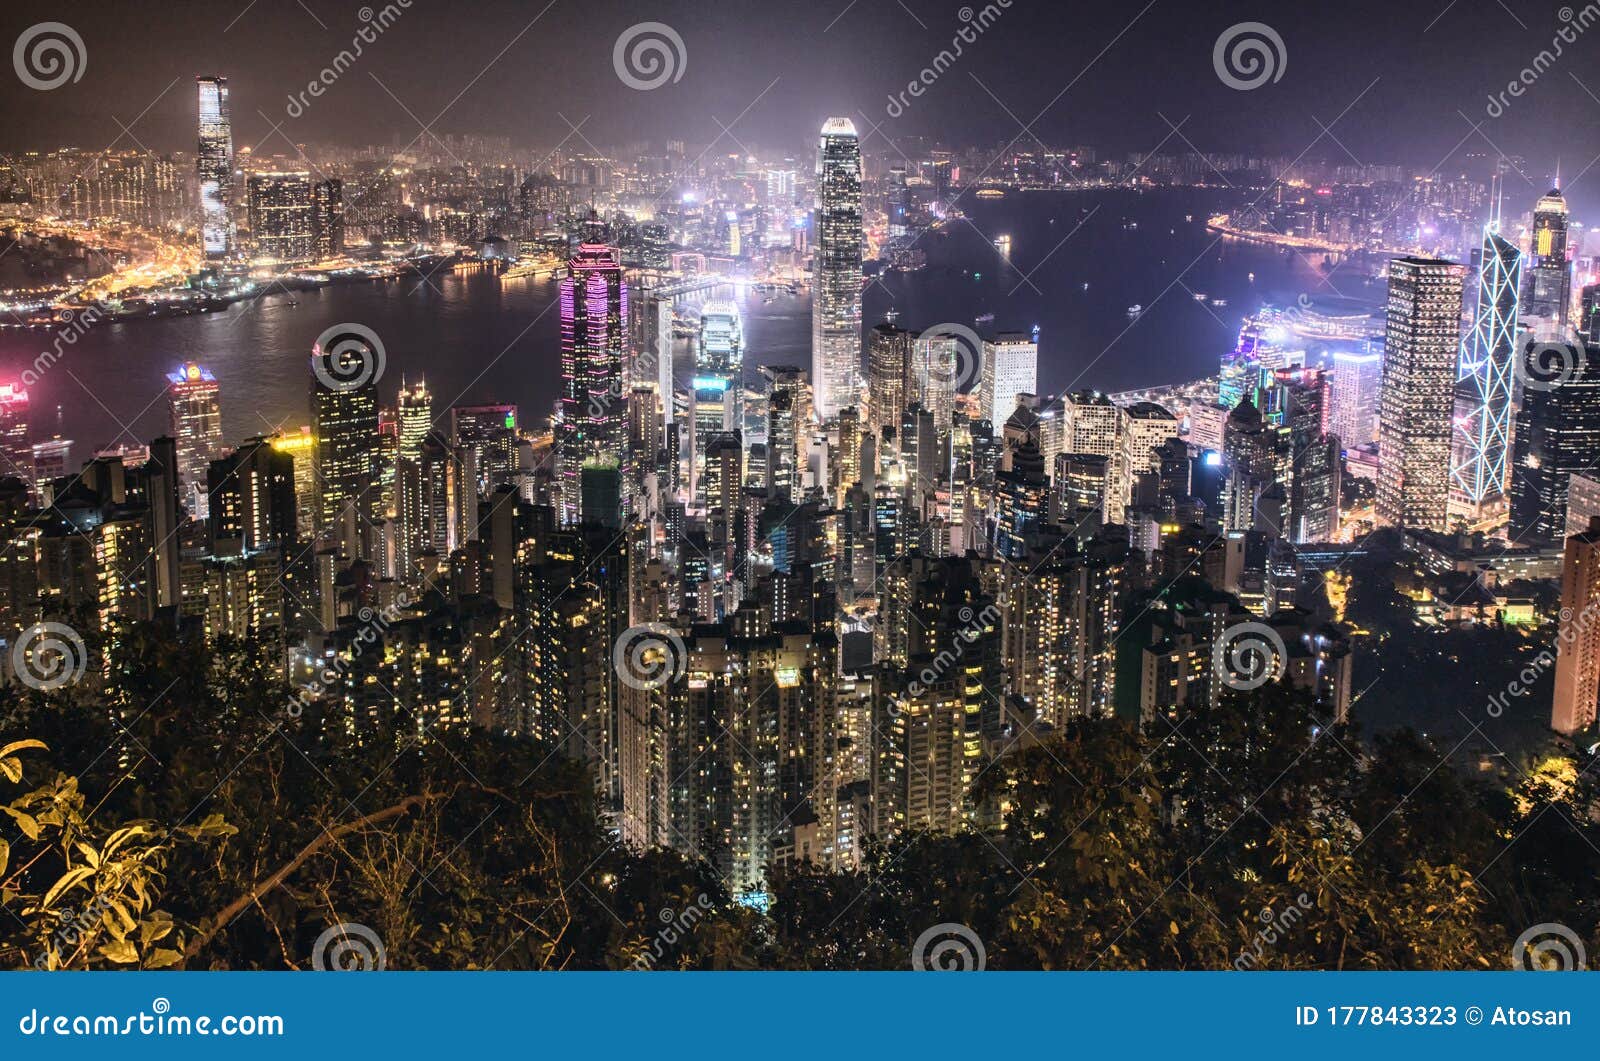 香港夜景城市夜生活的壮丽景观库存图片 图片包括有城市夜生活的壮丽景观 香港夜景